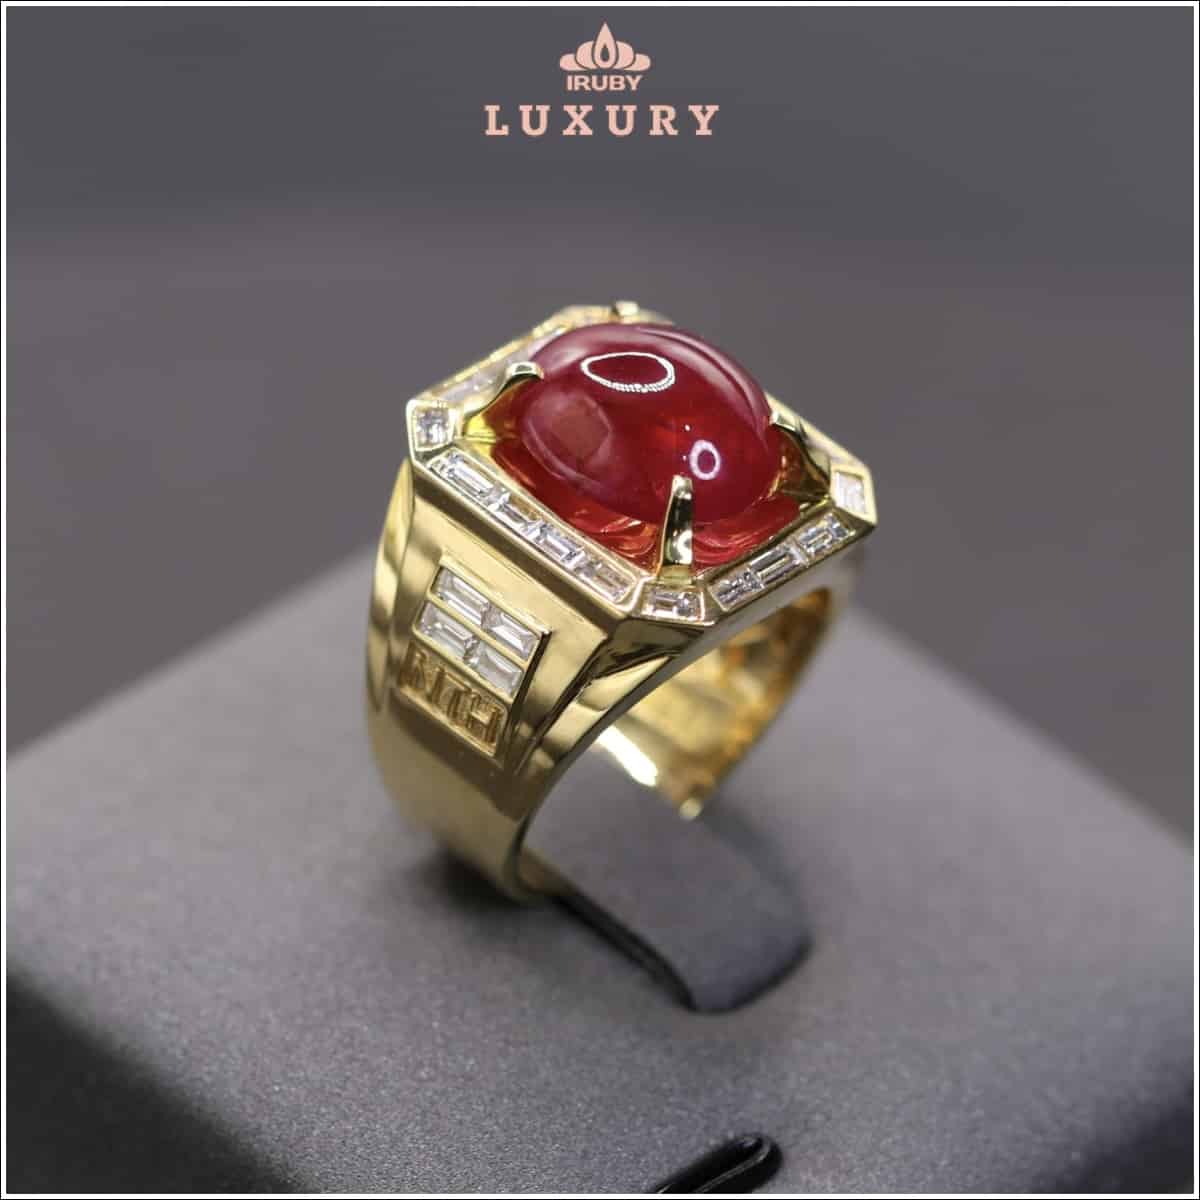 Nhẫn Ruby Luxury mẫu Chủ Tịch - IRRB 237920 hình ảnh 1